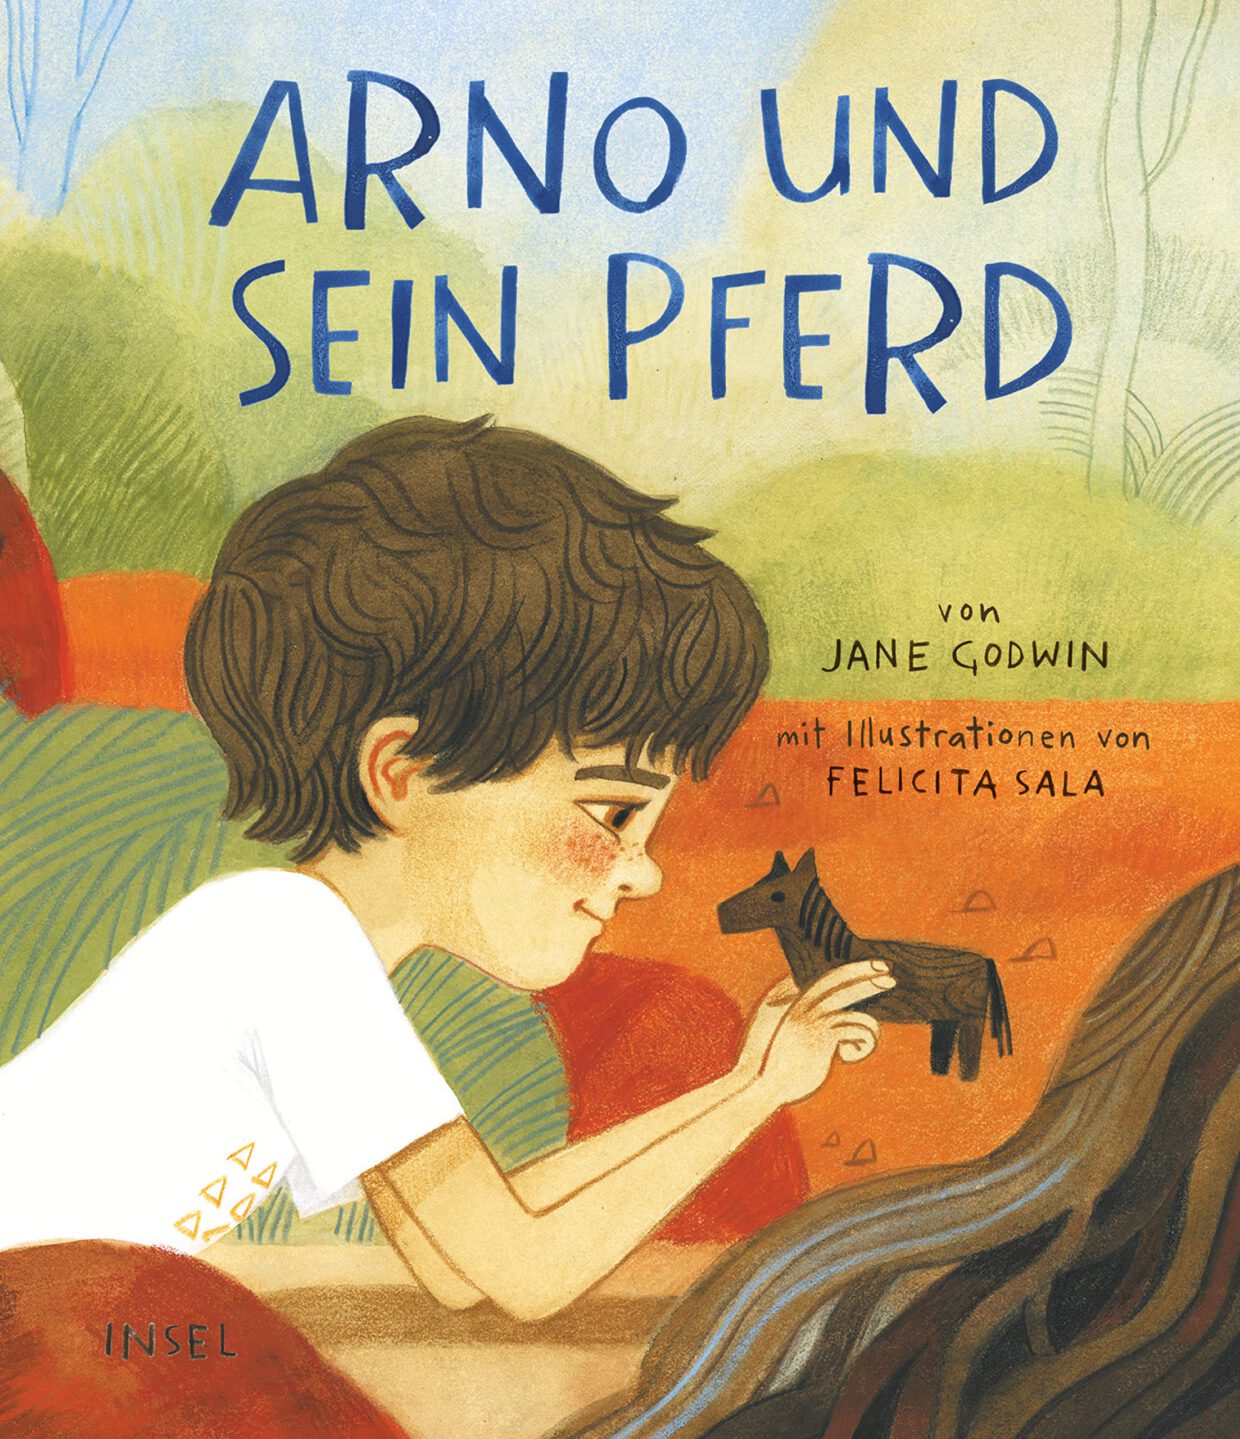 Jane Godwin/ Felicita Sala: Arno und sein Pferd